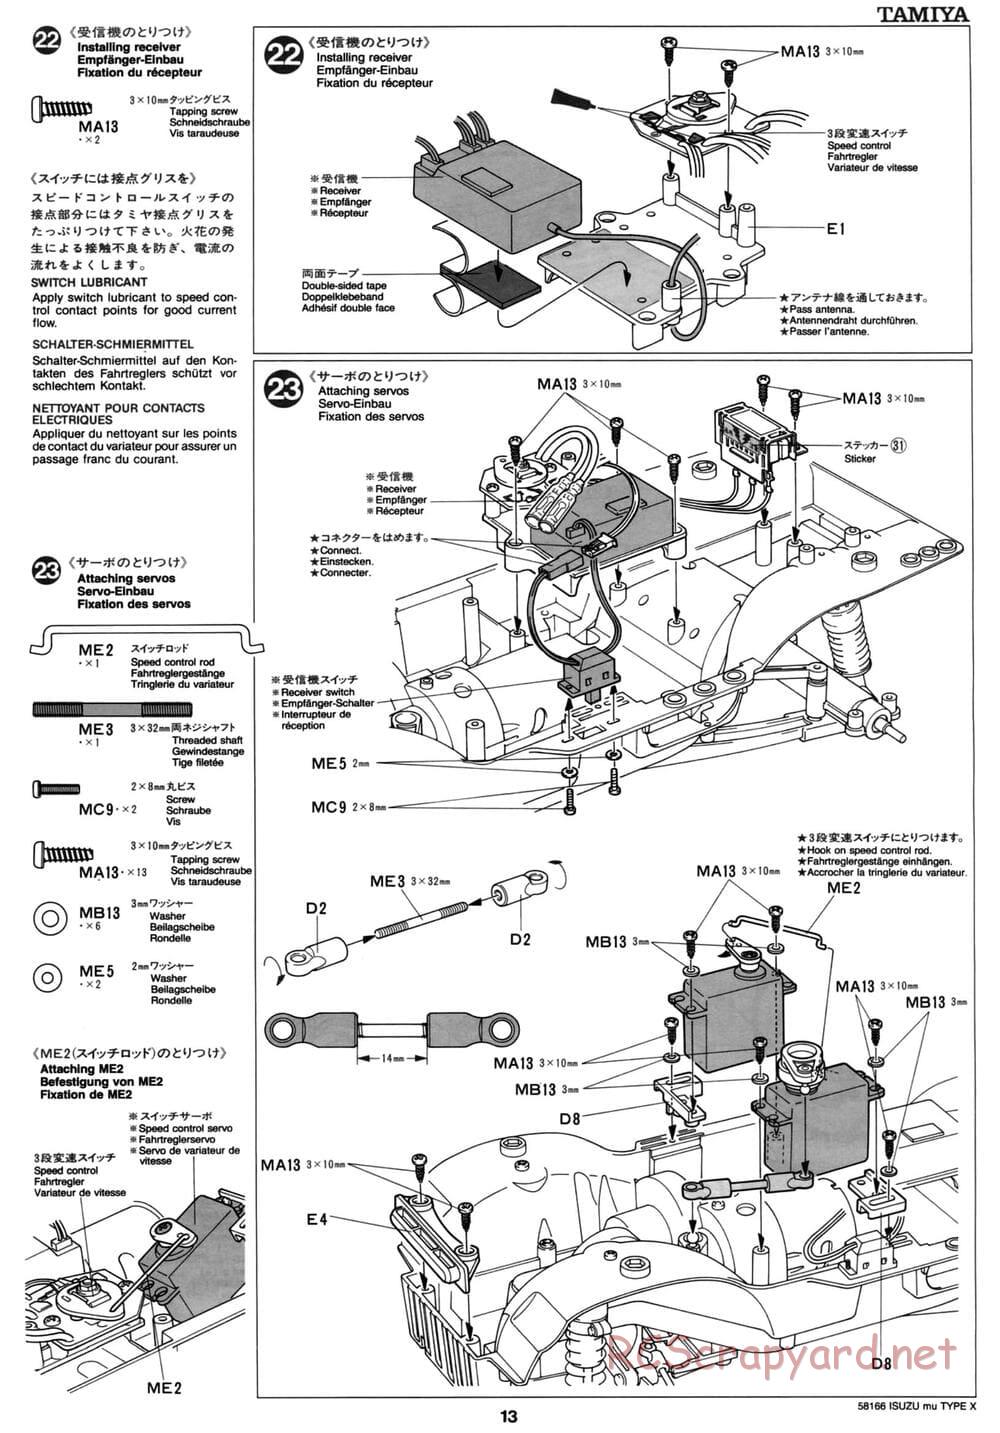 Tamiya - Isuzu Mu Type X - CC-01 Chassis - Manual - Page 13